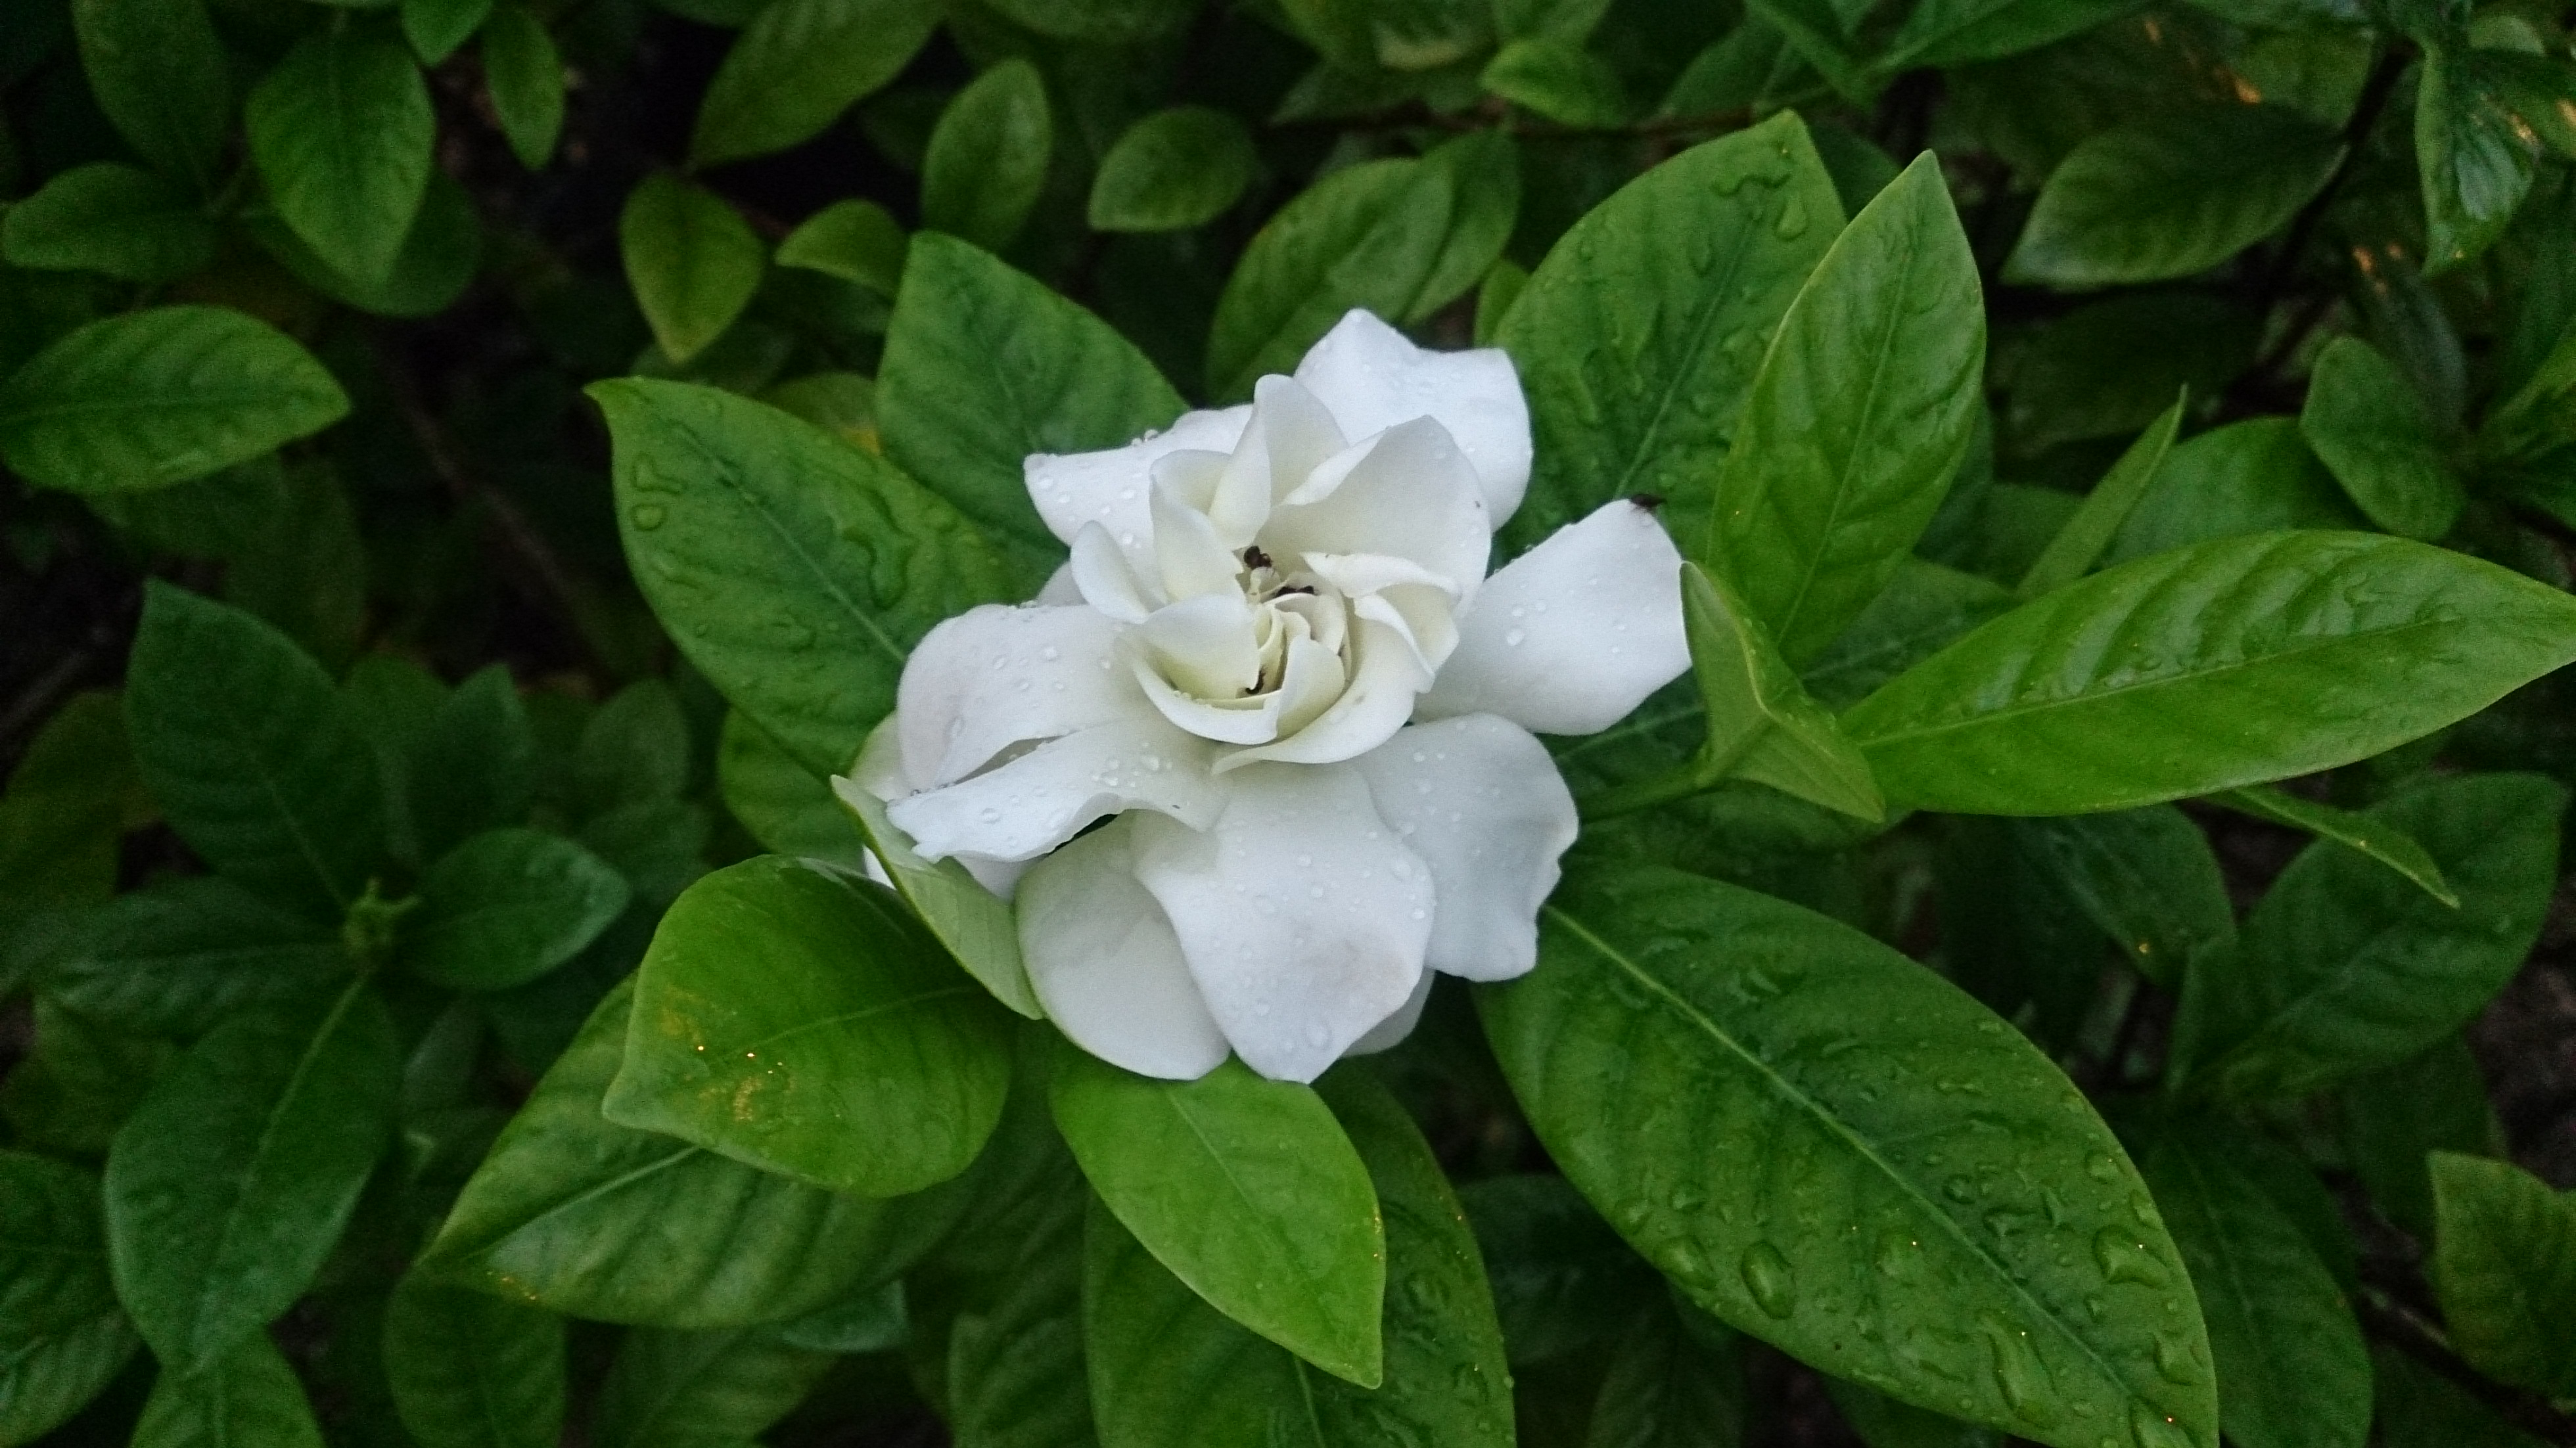 A white Gardenia jasminoides flower